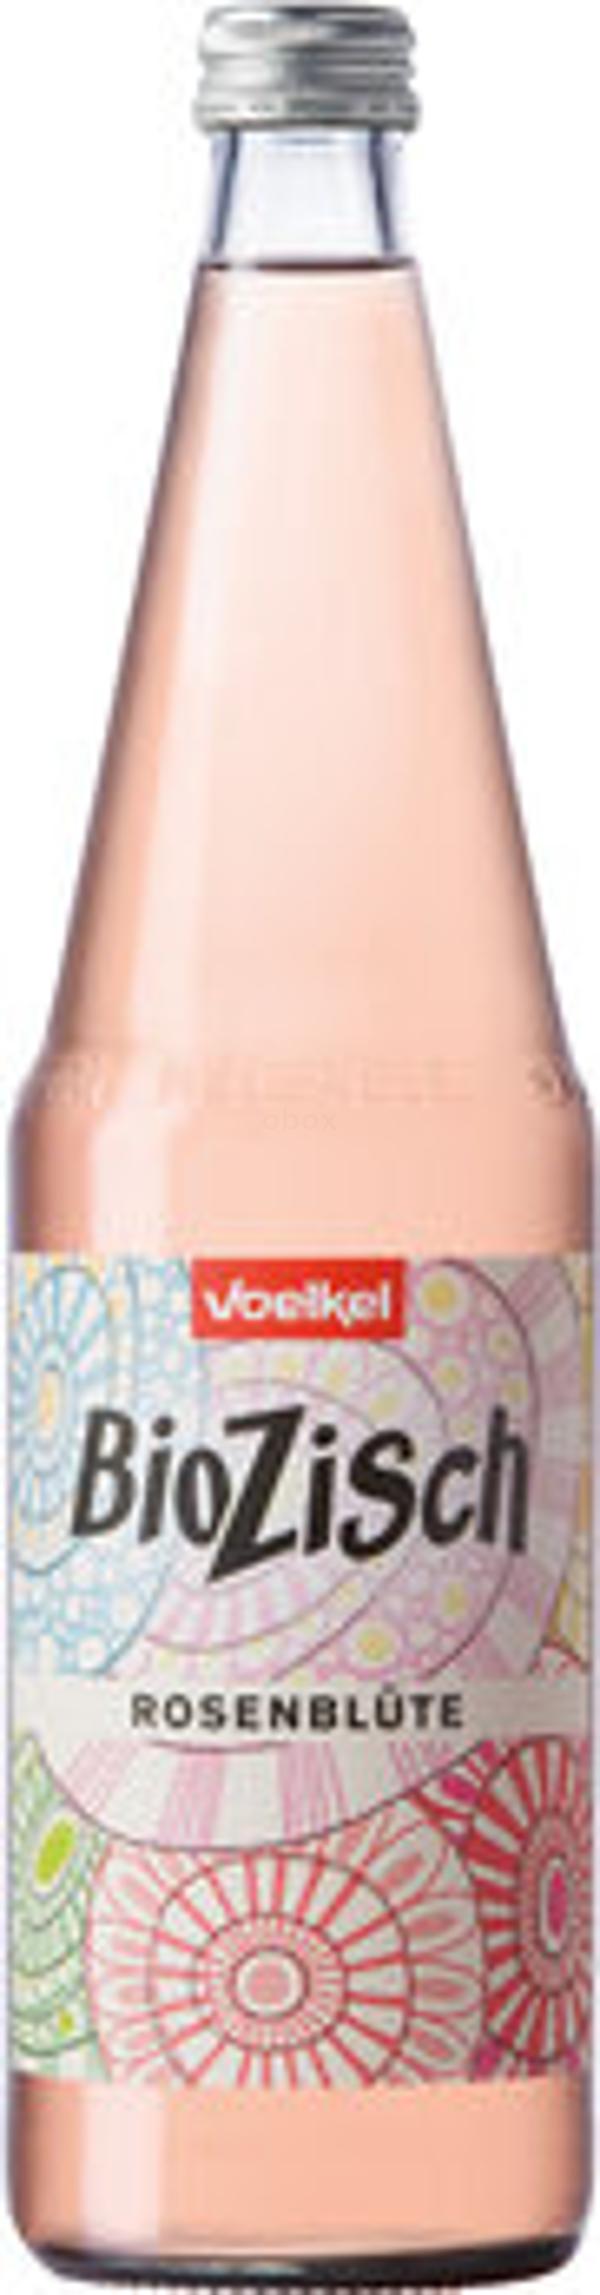 Produktfoto zu BioZisch Rosenblüte Kiste 6*0,7L